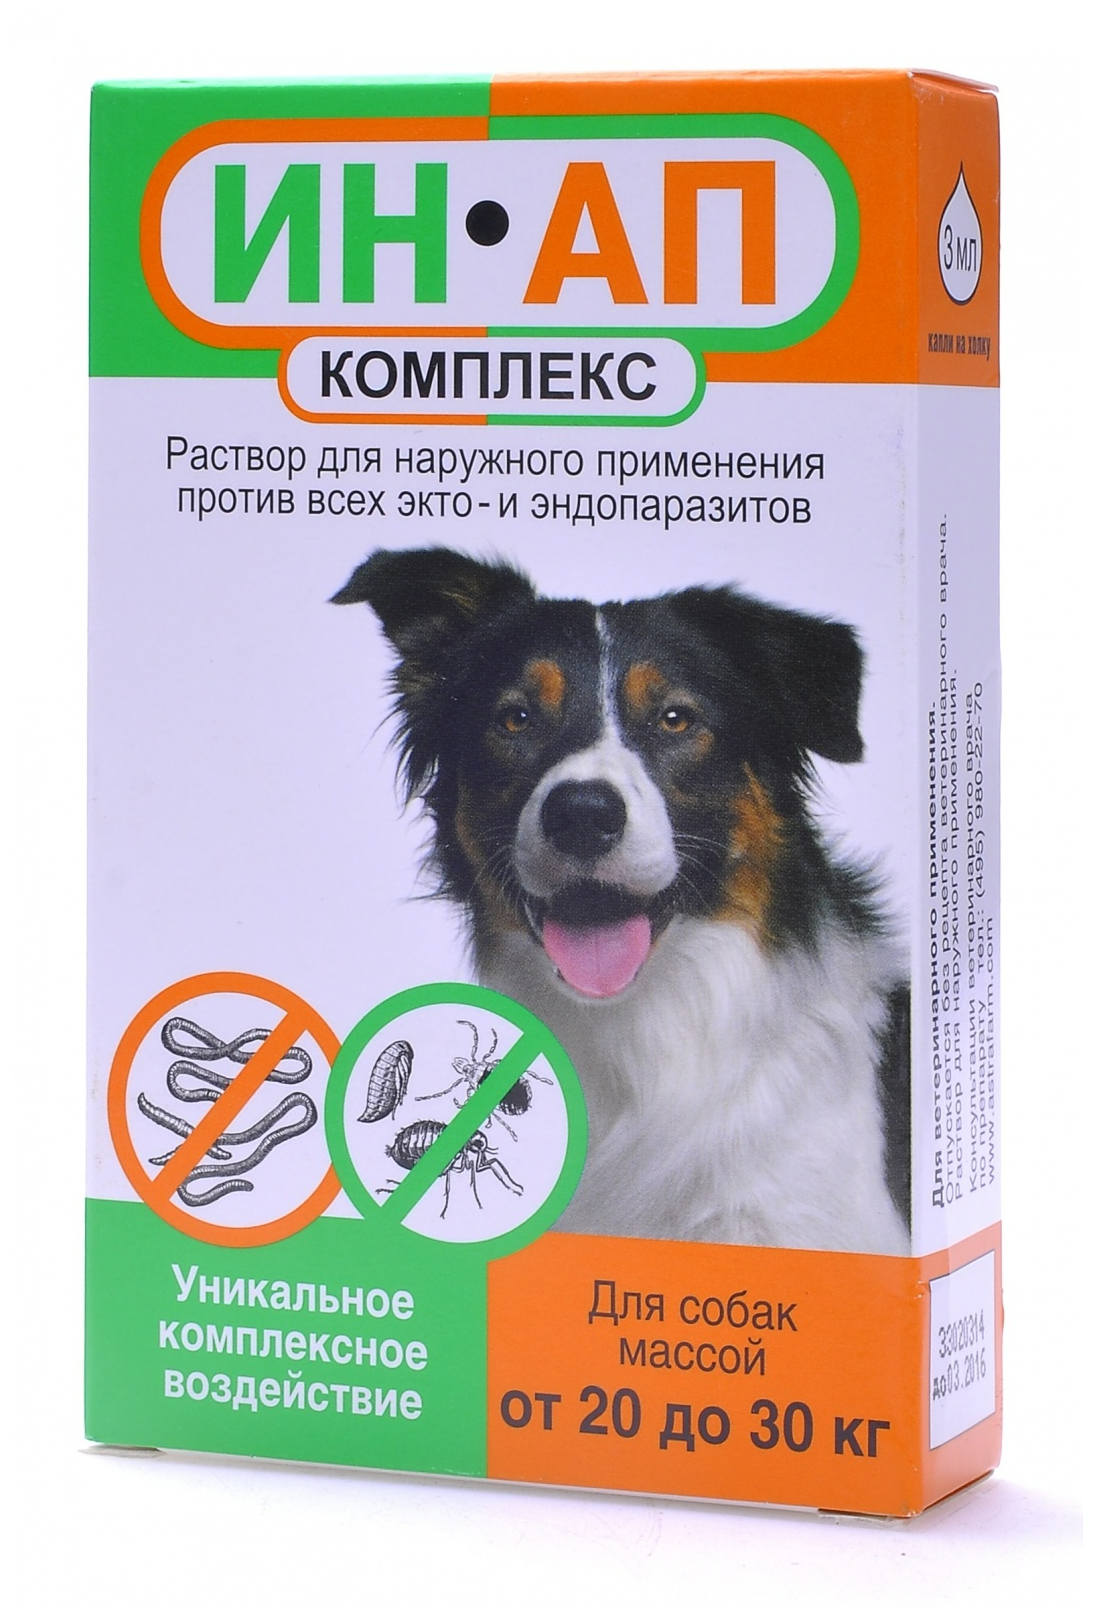 Астрафарм Капли против экто- и эндопаразитов ИН-АП для собак массой от 20 до 30 кг